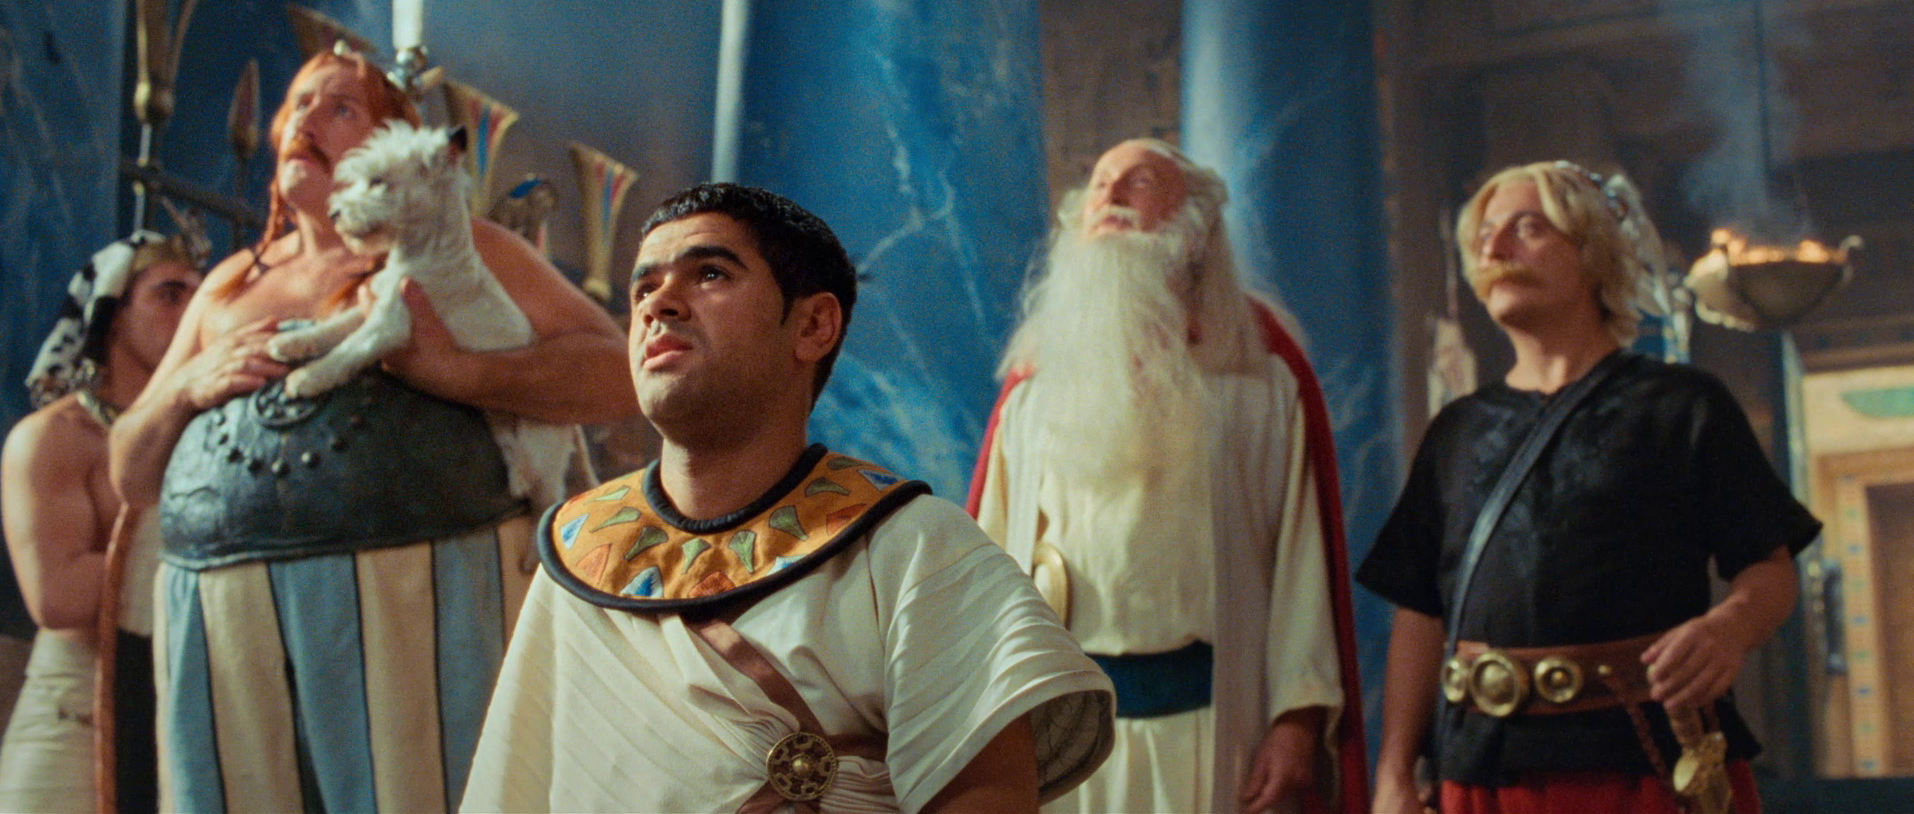 Astérix et Obélix Mission Cléopâtre : une fausse pub délirante pour la restauration 4K du film